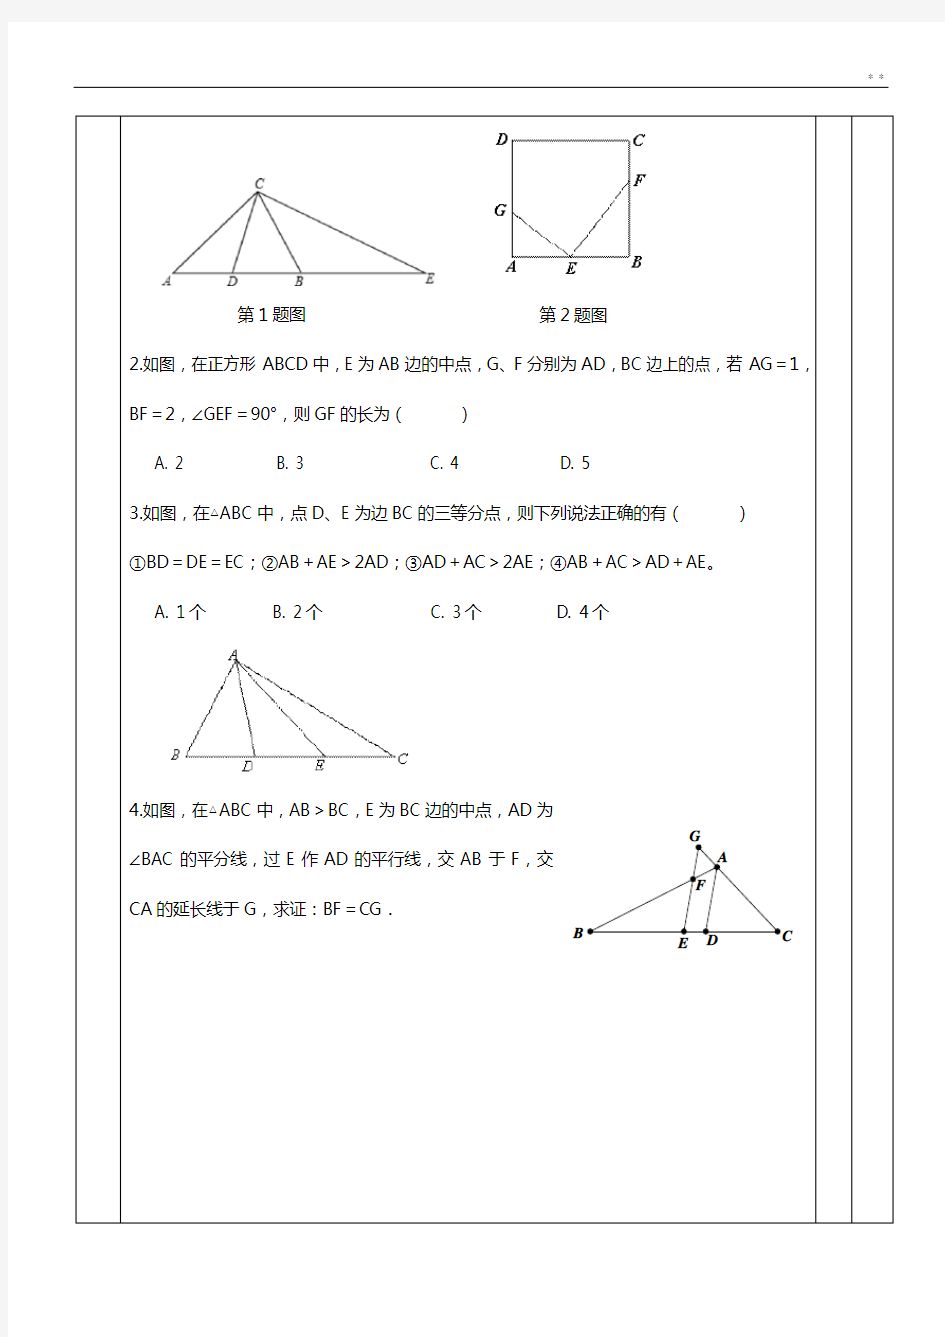 初级中学数学《几何辅助线秘籍》中点模型的构造1(倍长中线法;构造中位线法)